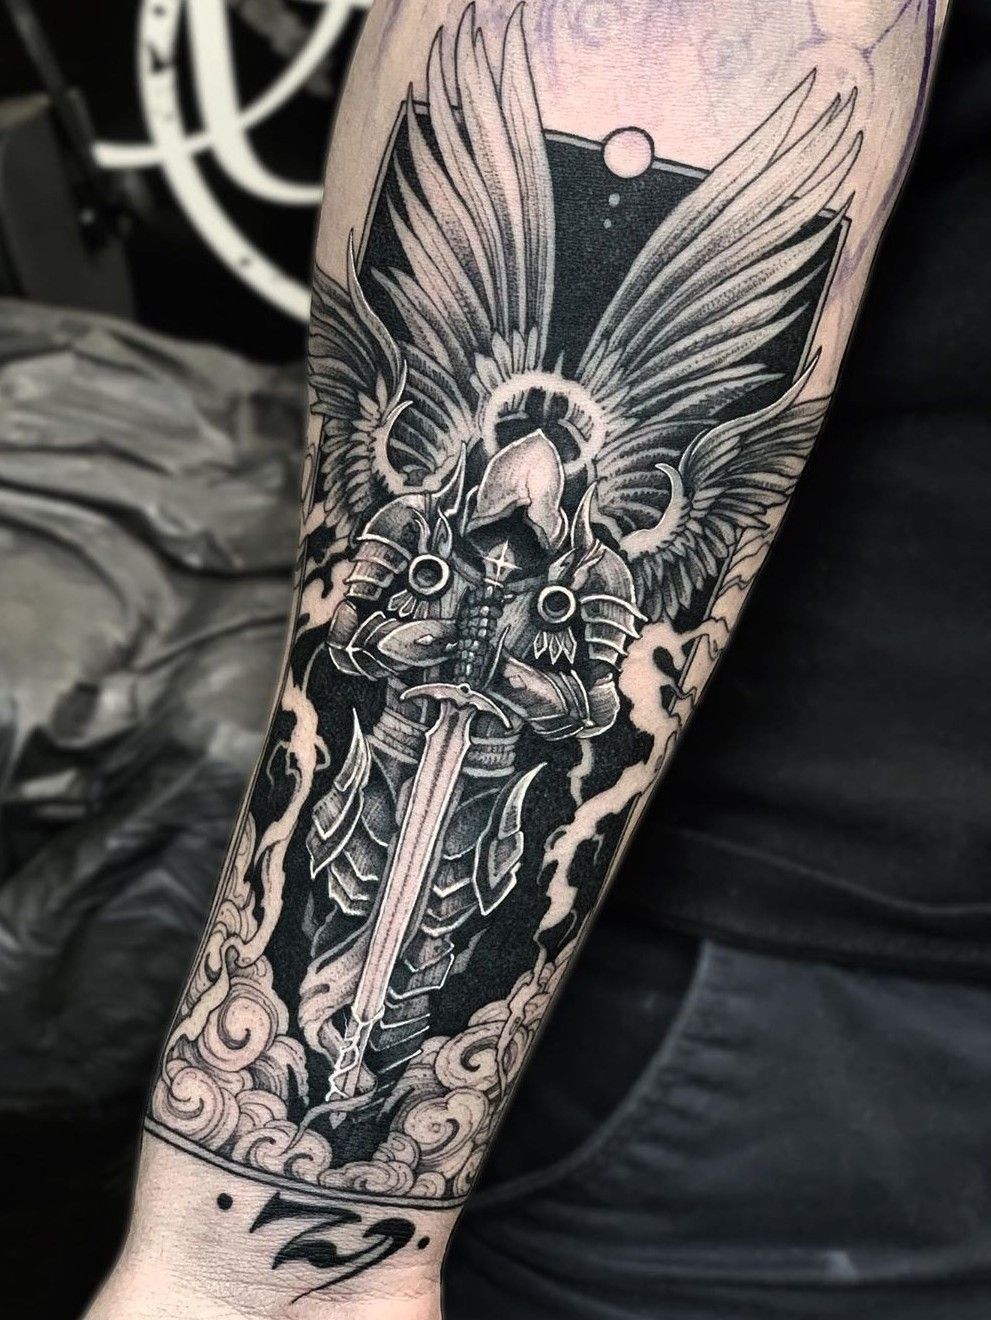 Archangel Gabriel - by Seth Holmes at Foundation Tattoo Parlor, Pittsburgh,  PA : r/tattoos